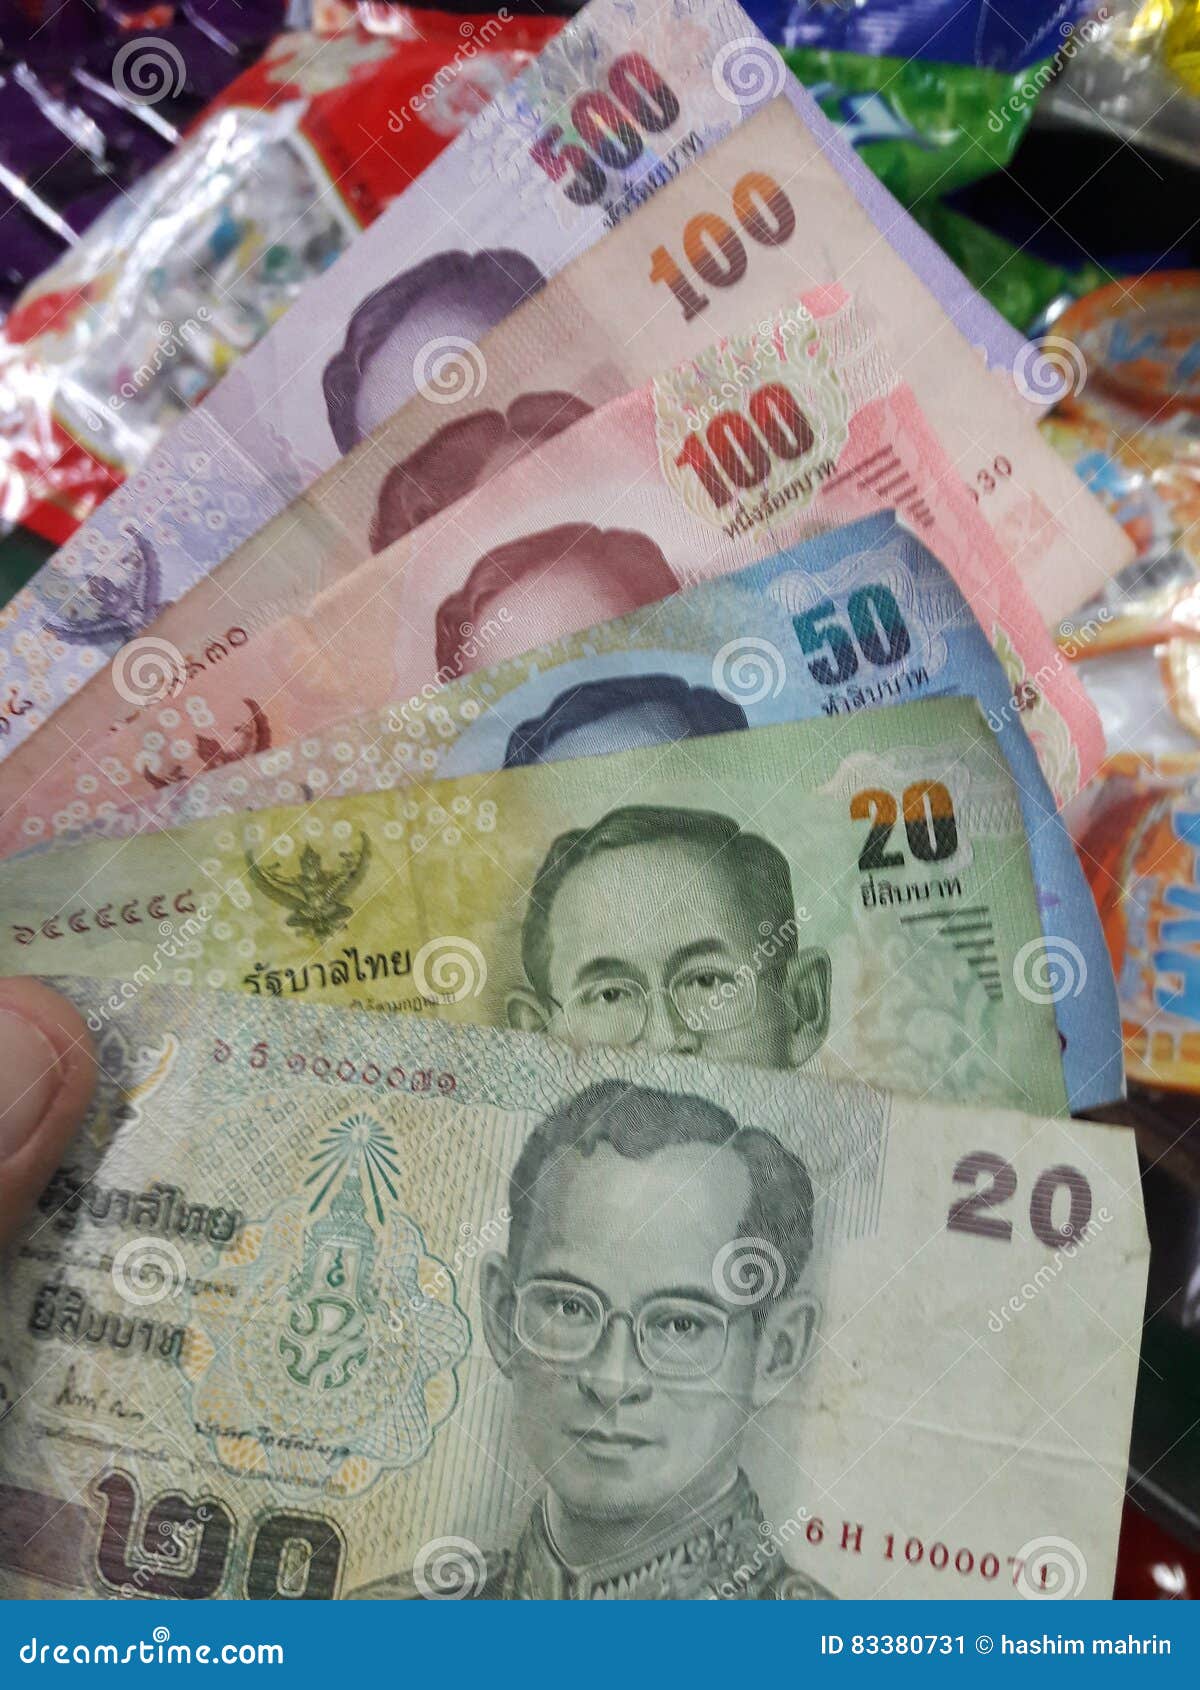 塑膠做的！新版20泰銖鈔票亮相 預計3月開放兌換 - Vision Thai 看見泰國